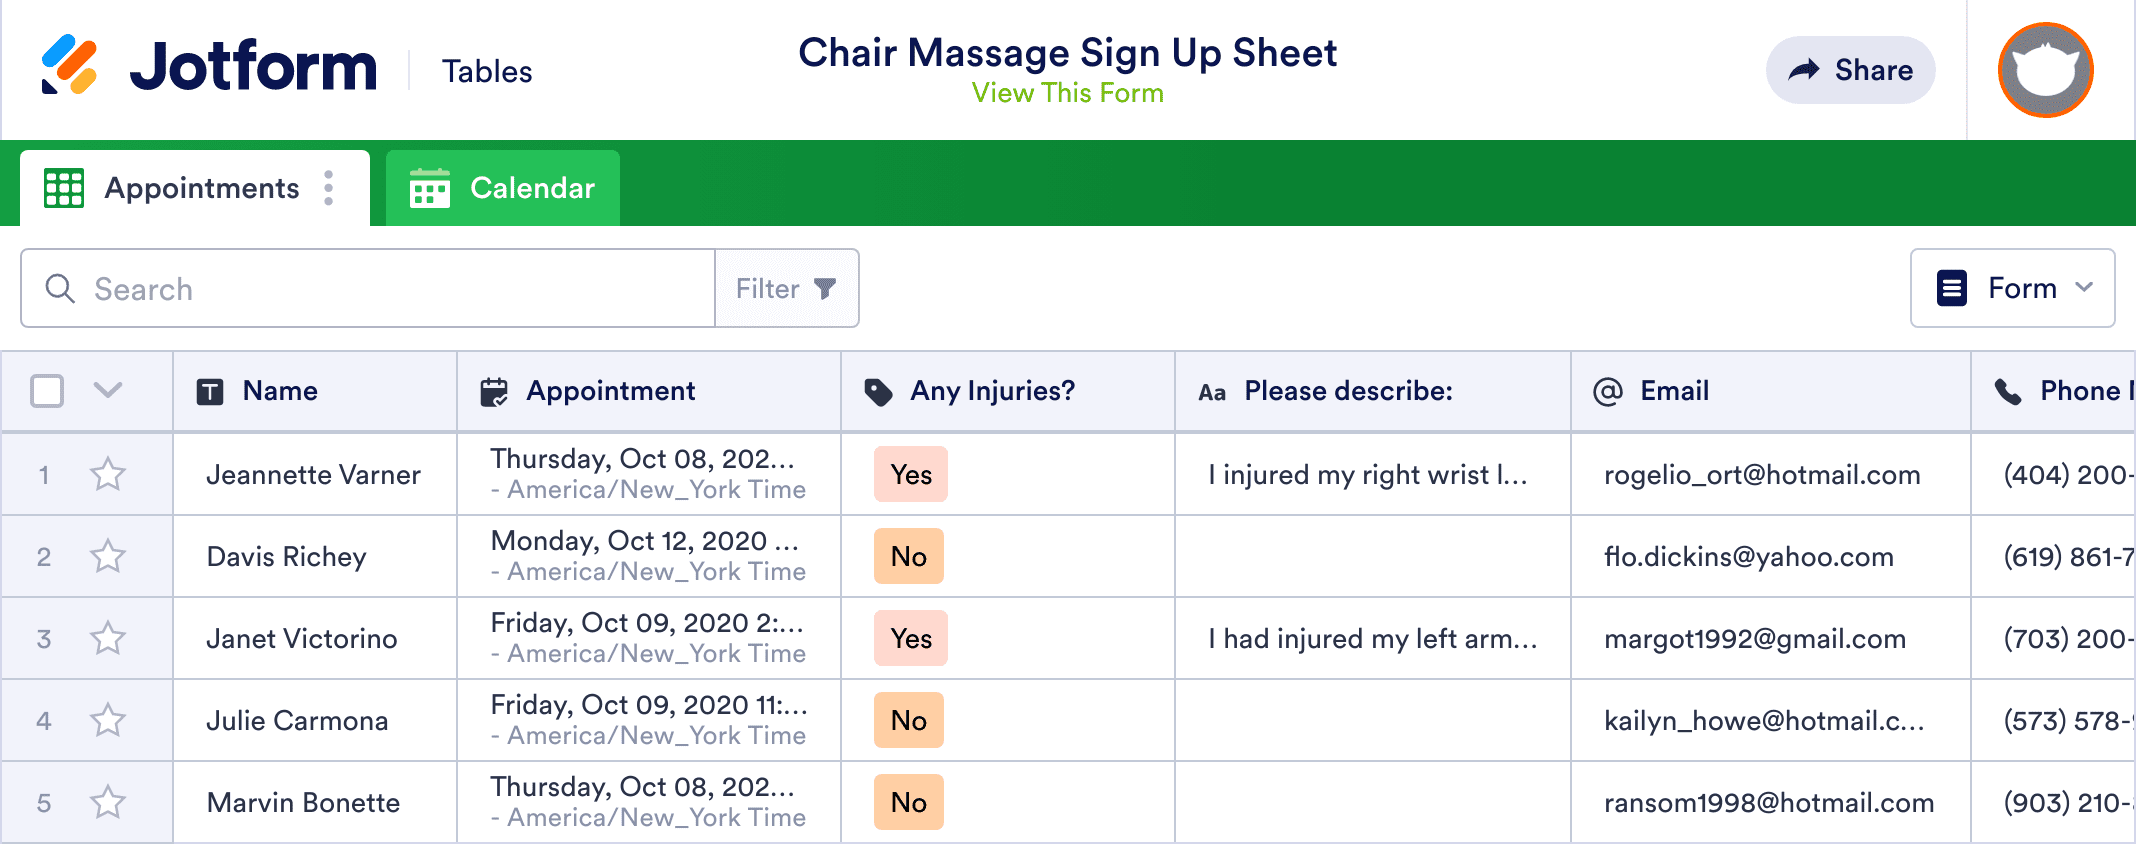 Chair Massage Sign Up Sheet